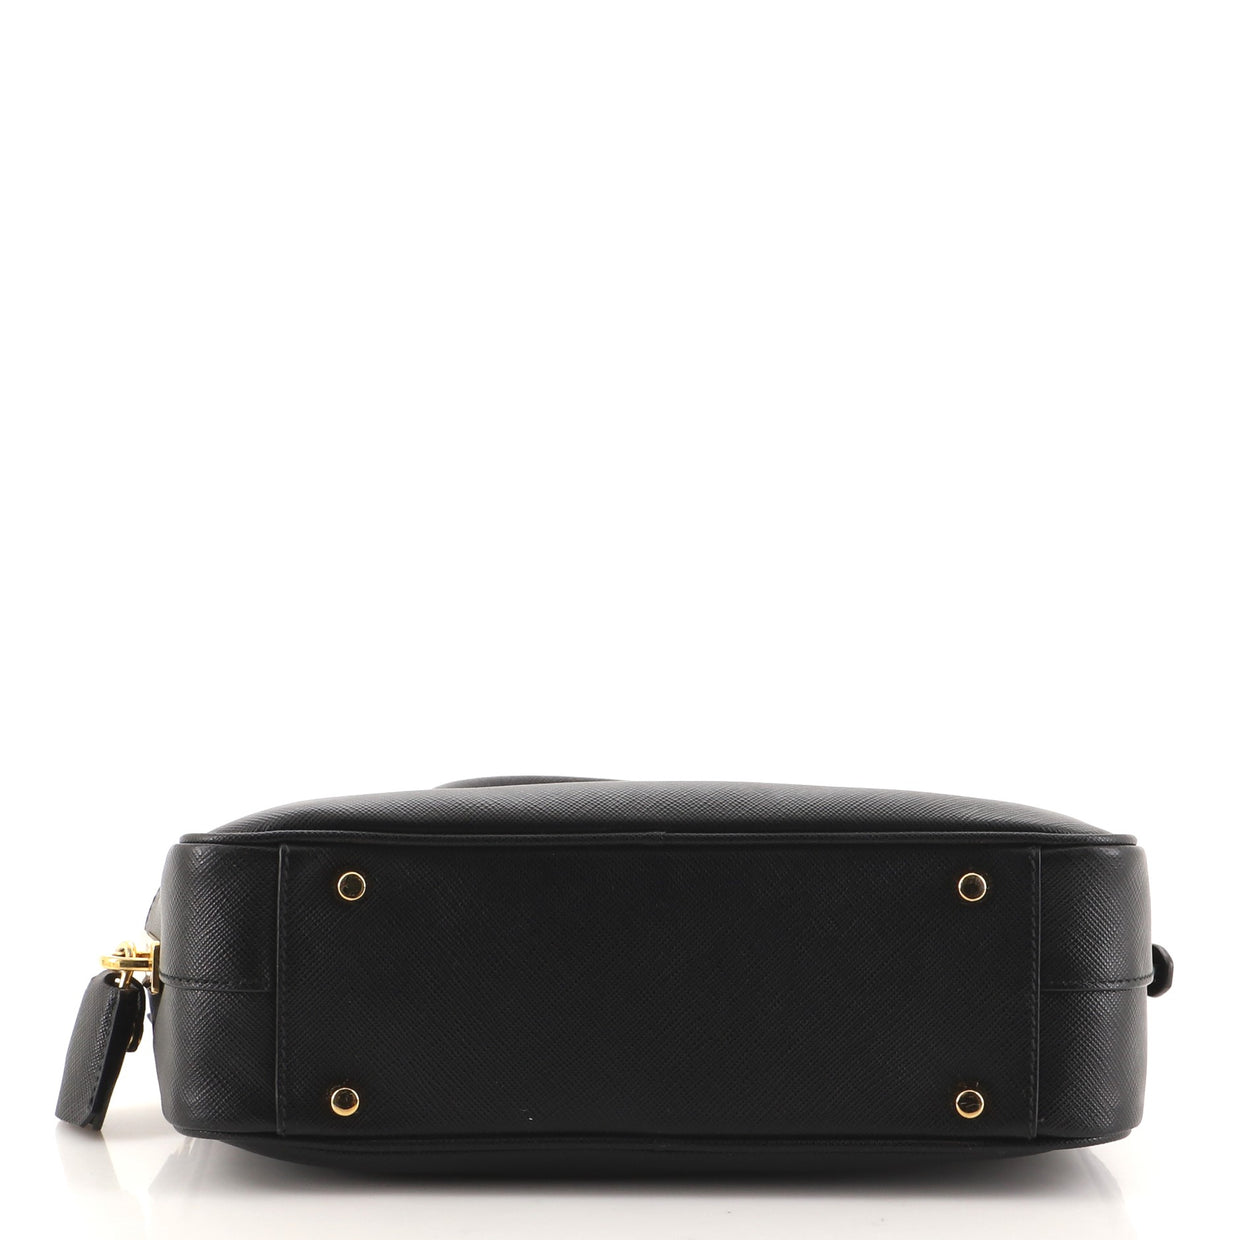 Prada Convertible Bauletto Bag Saffiano Leather Small Black 96992145